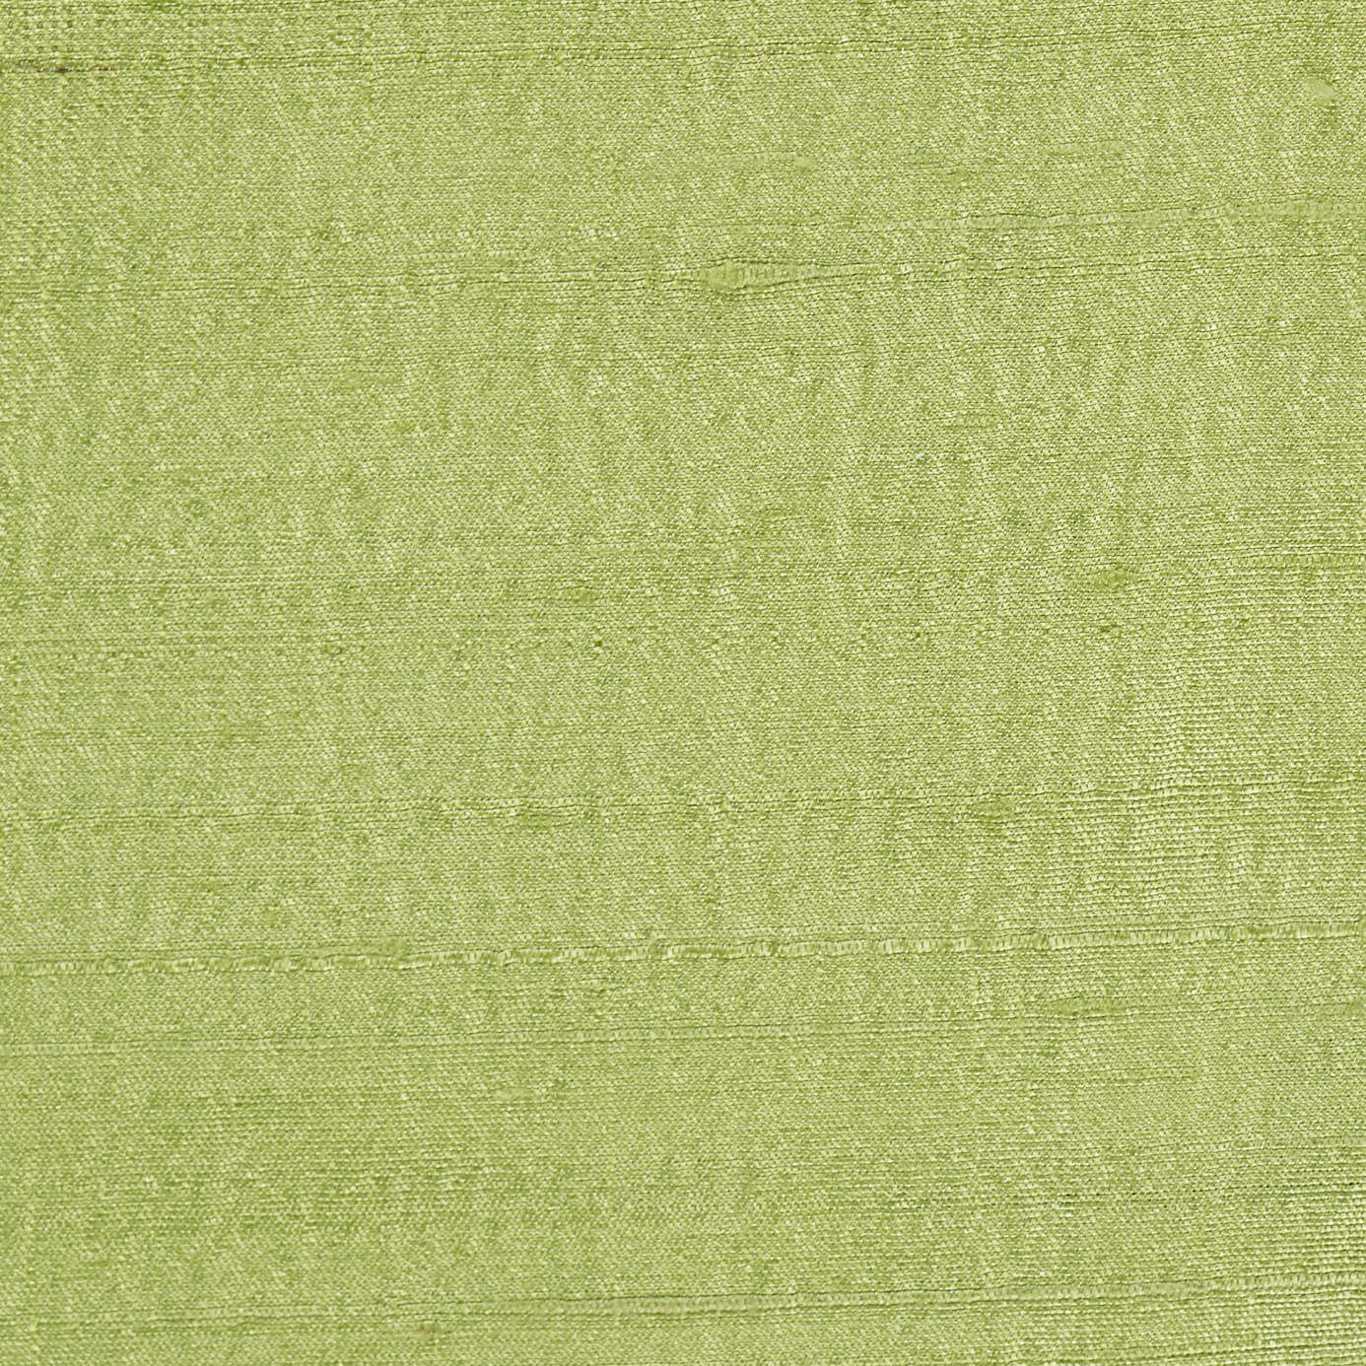 Laminar Peashoot Fabric by HAR